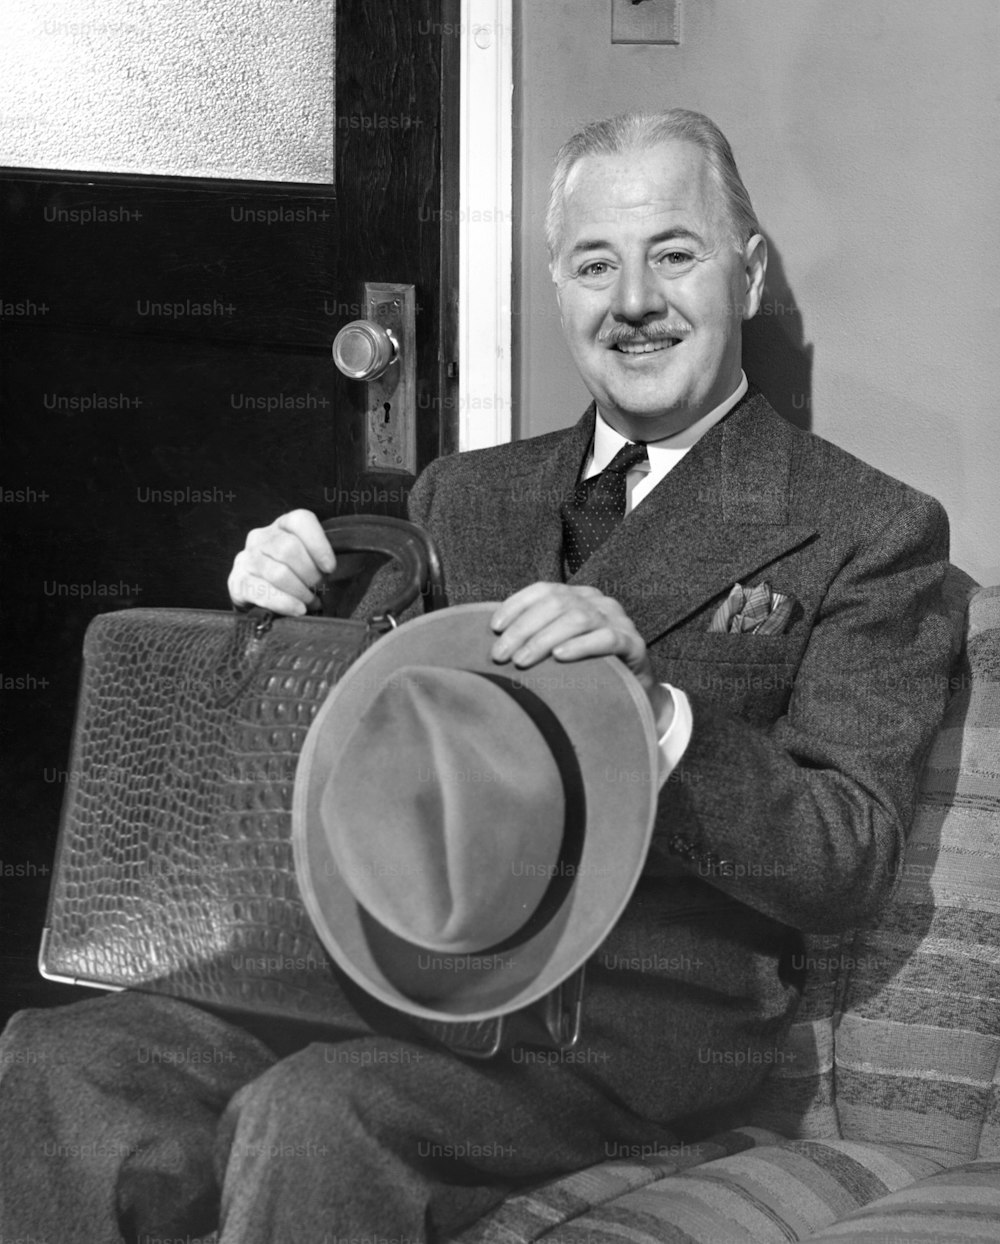 STATI UNITI - CIRCA 1950: Uomo d'affari che tiene il cappello in attesa nell'ufficio esterno.